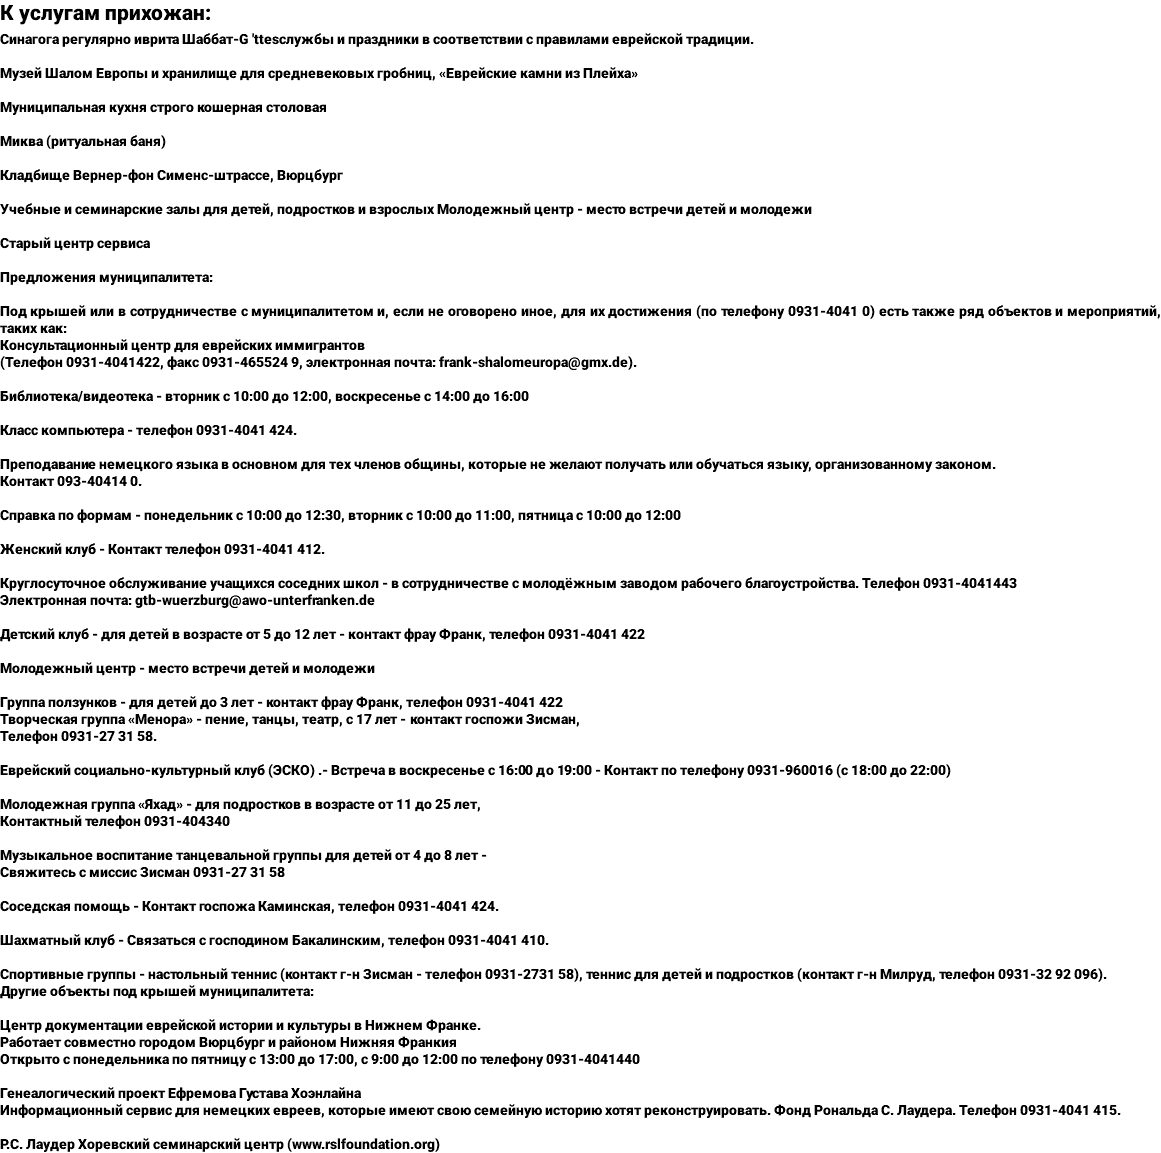 К услугам прихожан: Синагога регулярно иврита Шаббат-G 'ttesслужбы и праздники в соответствии с правилами еврейской традиции. Музей Шалом Европы и хранилище для средневековых гробниц, «Еврейские камни из Плейха» Муниципальная кухня строго кошерная столовая Миква (ритуальная баня) Кладбище Вернер-фон Сименс-штрассе, Вюрцбург Учебные и семинарские залы для детей, подростков и взрослых Молодежный центр - место встречи детей и молодежи Старый центр сервиса Предложения муниципалитета: Под крышей или в сотрудничестве с муниципалитетом и, если не оговорено иное, для их достижения (по телефону 0931-4041 0) есть также ряд объектов и мероприятий, таких как: Консультационный центр для еврейских иммигрантов (Телефон 0931-4041422, факс 0931-465524 9, электронная почта: frank-shalomeuropa@gmx.de). Библиотека/видеотека - вторник с 10:00 до 12:00, воскресенье с 14:00 до 16:00 Класс компьютера - телефон 0931-4041 424. Преподавание немецкого языка в основном для тех членов общины, которые не желают получать или обучаться языку, организованному законом. Контакт 093-40414 0. Справка по формам - понедельник с 10:00 до 12:30, вторник с 10:00 до 11:00, пятница с 10:00 до 12:00 Женский клуб - Контакт телефон 0931-4041 412. Круглосуточное обслуживание учащихся соседних школ - в сотрудничестве с молодёжным заводом рабочего благоустройства. Телефон 0931-4041443 Электронная почта: gtb-wuerzburg@awo-unterfranken.de Детский клуб - для детей в возрасте от 5 до 12 лет - контакт фрау Франк, телефон 0931-4041 422 Молодежный центр - место встречи детей и молодежи Группа ползунков - для детей до 3 лет - контакт фрау Франк, телефон 0931-4041 422 Творческая группа «Менора» - пение, танцы, театр, с 17 лет - контакт госпожи Зисман, Телефон 0931-27 31 58. Еврейский социально-культурный клуб (ЭСКО) .- Встреча в воскресенье с 16:00 до 19:00 - Контакт по телефону 0931-960016 (с 18:00 до 22:00) Молодежная группа «Яхад» - для подростков в возрасте от 11 до 25 лет, Контактный телефон 0931-404340 Музыкальное воспитание танцевальной группы для детей от 4 до 8 лет - Свяжитесь с миссис Зисман 0931-27 31 58 Соседская помощь - Контакт госпожа Каминская, телефон 0931-4041 424. Шахматный клуб - Связаться с господином Бакалинским, телефон 0931-4041 410. Спортивные группы - настольный теннис (контакт г-н Зисман - телефон 0931-2731 58), теннис для детей и подростков (контакт г-н Милруд, телефон 0931-32 92 096). Другие объекты под крышей муниципалитета: Центр документации еврейской истории и культуры в Нижнем Франке. Работает совместно городом Вюрцбург и районом Нижняя Франкия Открыто с понедельника по пятницу с 13:00 до 17:00, с 9:00 до 12:00 по телефону 0931-4041440 Генеалогический проект Ефремова Густава Хоэнлайна Информационный сервис для немецких евреев, которые имеют свою семейную историю хотят реконструировать. Фонд Рональда С. Лаудера. Телефон 0931-4041 415. Р.С. Лаудер Хоревский семинарский центр (www.rslfoundation.org)